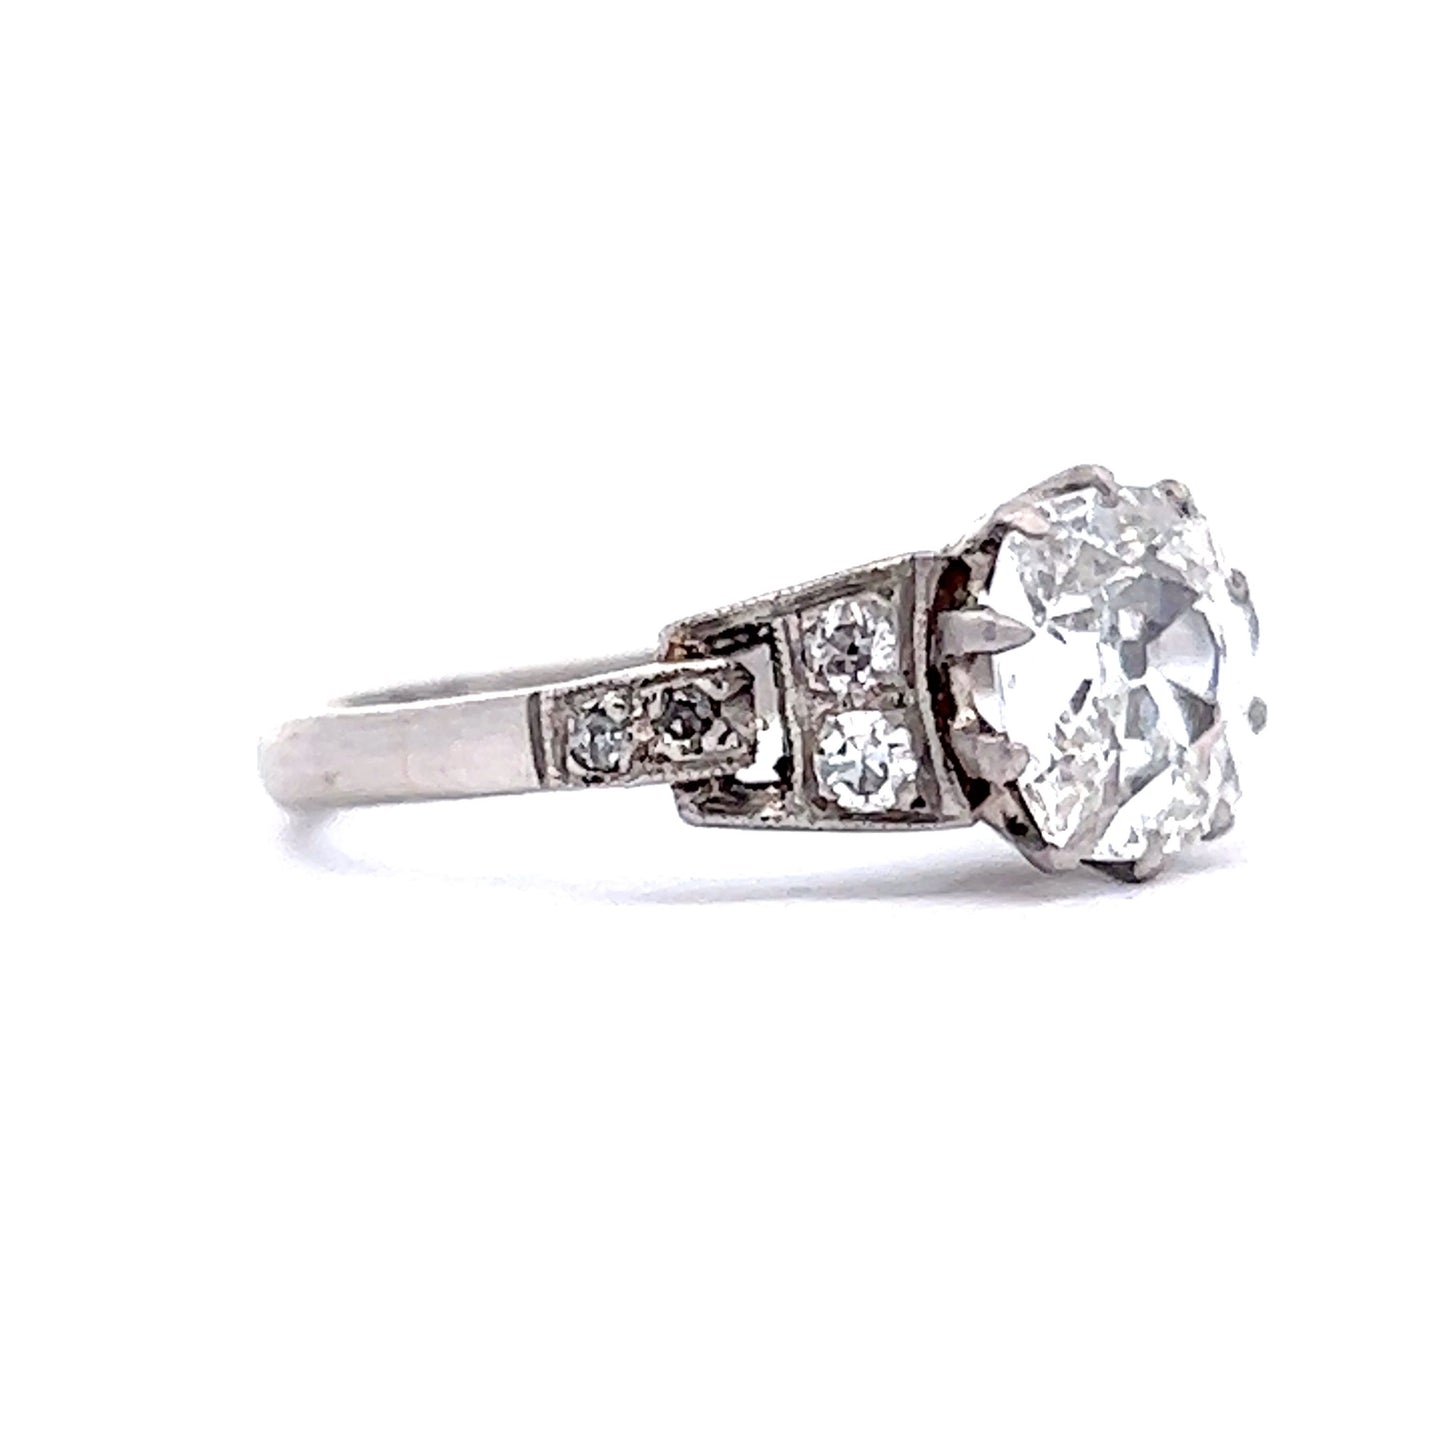 1.01 Art Deco Diamond Engagement Ring in Platinum